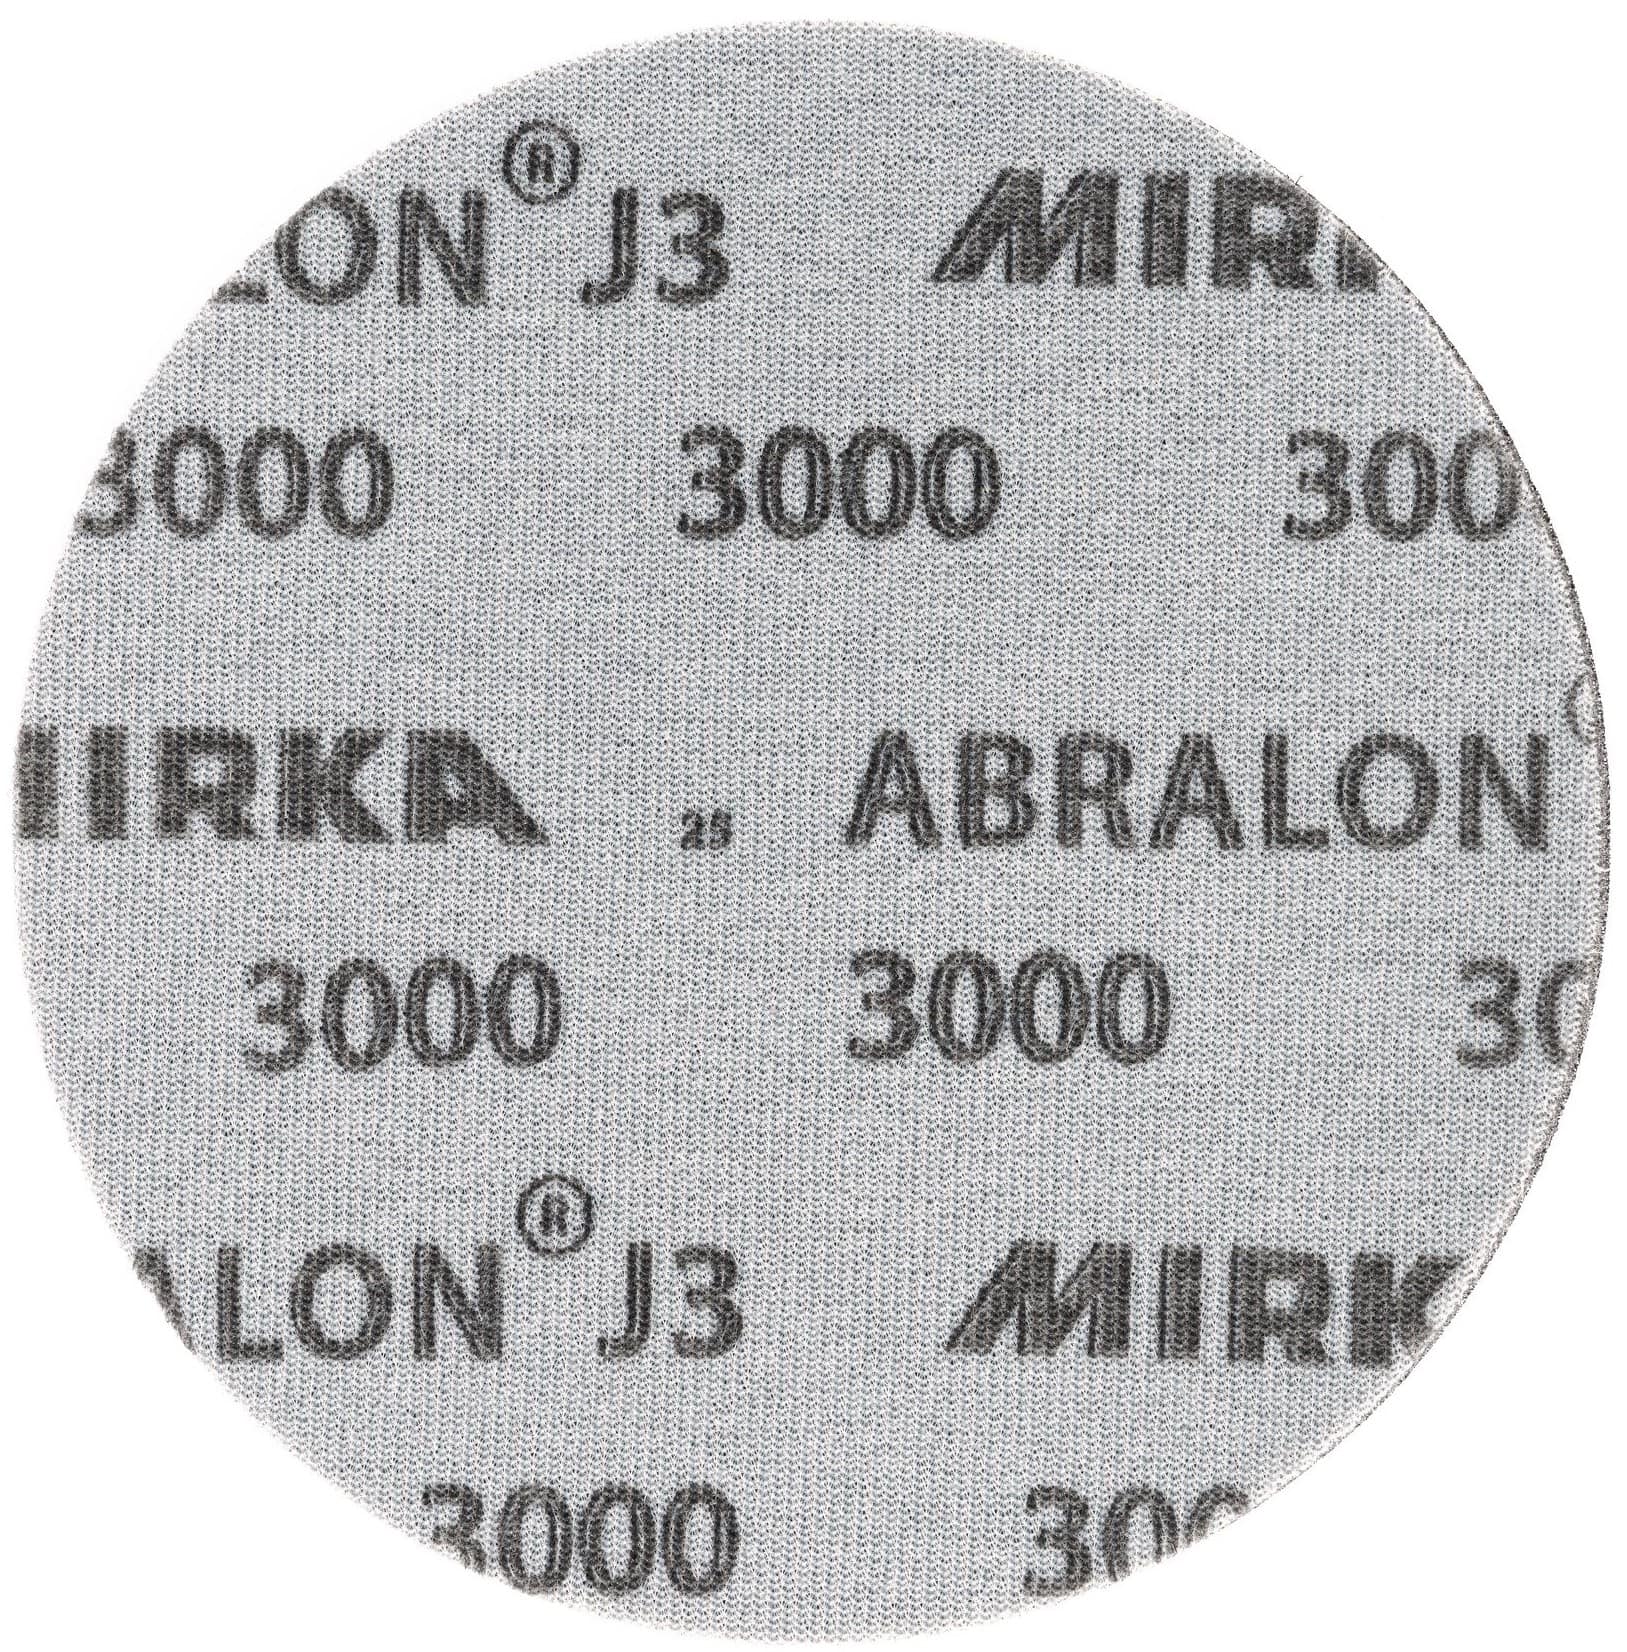 Mirka® Abralon J3 8M055363, Ø 225 mm, P2000, S, Ungelocht, Kletthaftend, Schleifscheibe mit Siliziumkarbidkorn, Für Finish- und Polierarbeiten an Werkstücken